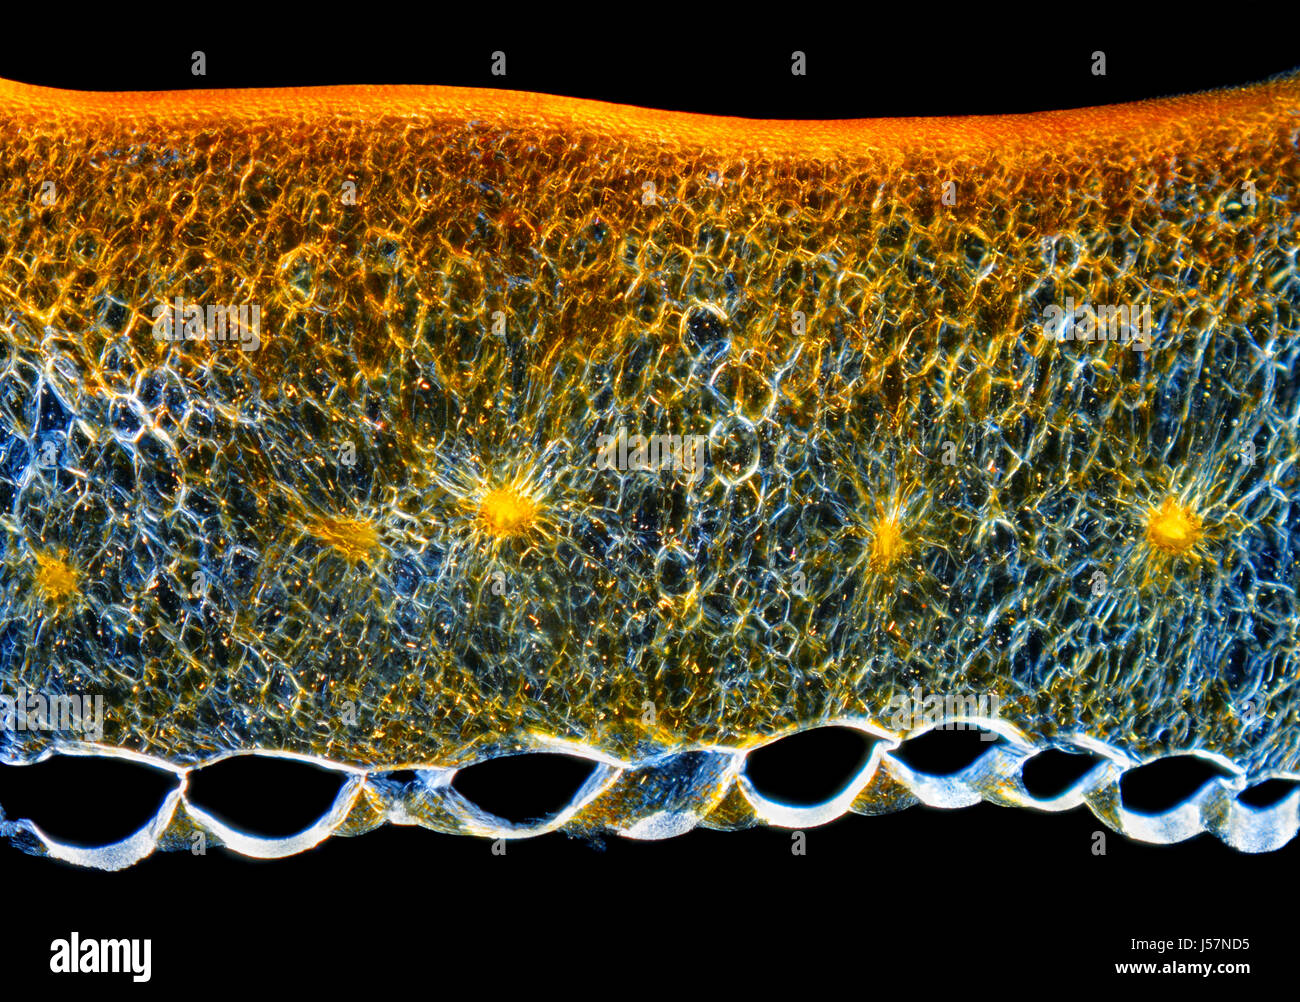 Mikroskopische Ansicht eines Chili-Pfeffer (Capsicum Annuum) Obst Perikarp Querschnitts. Polarisiertes Licht, gekreuzte Polarisatoren. Stockfoto